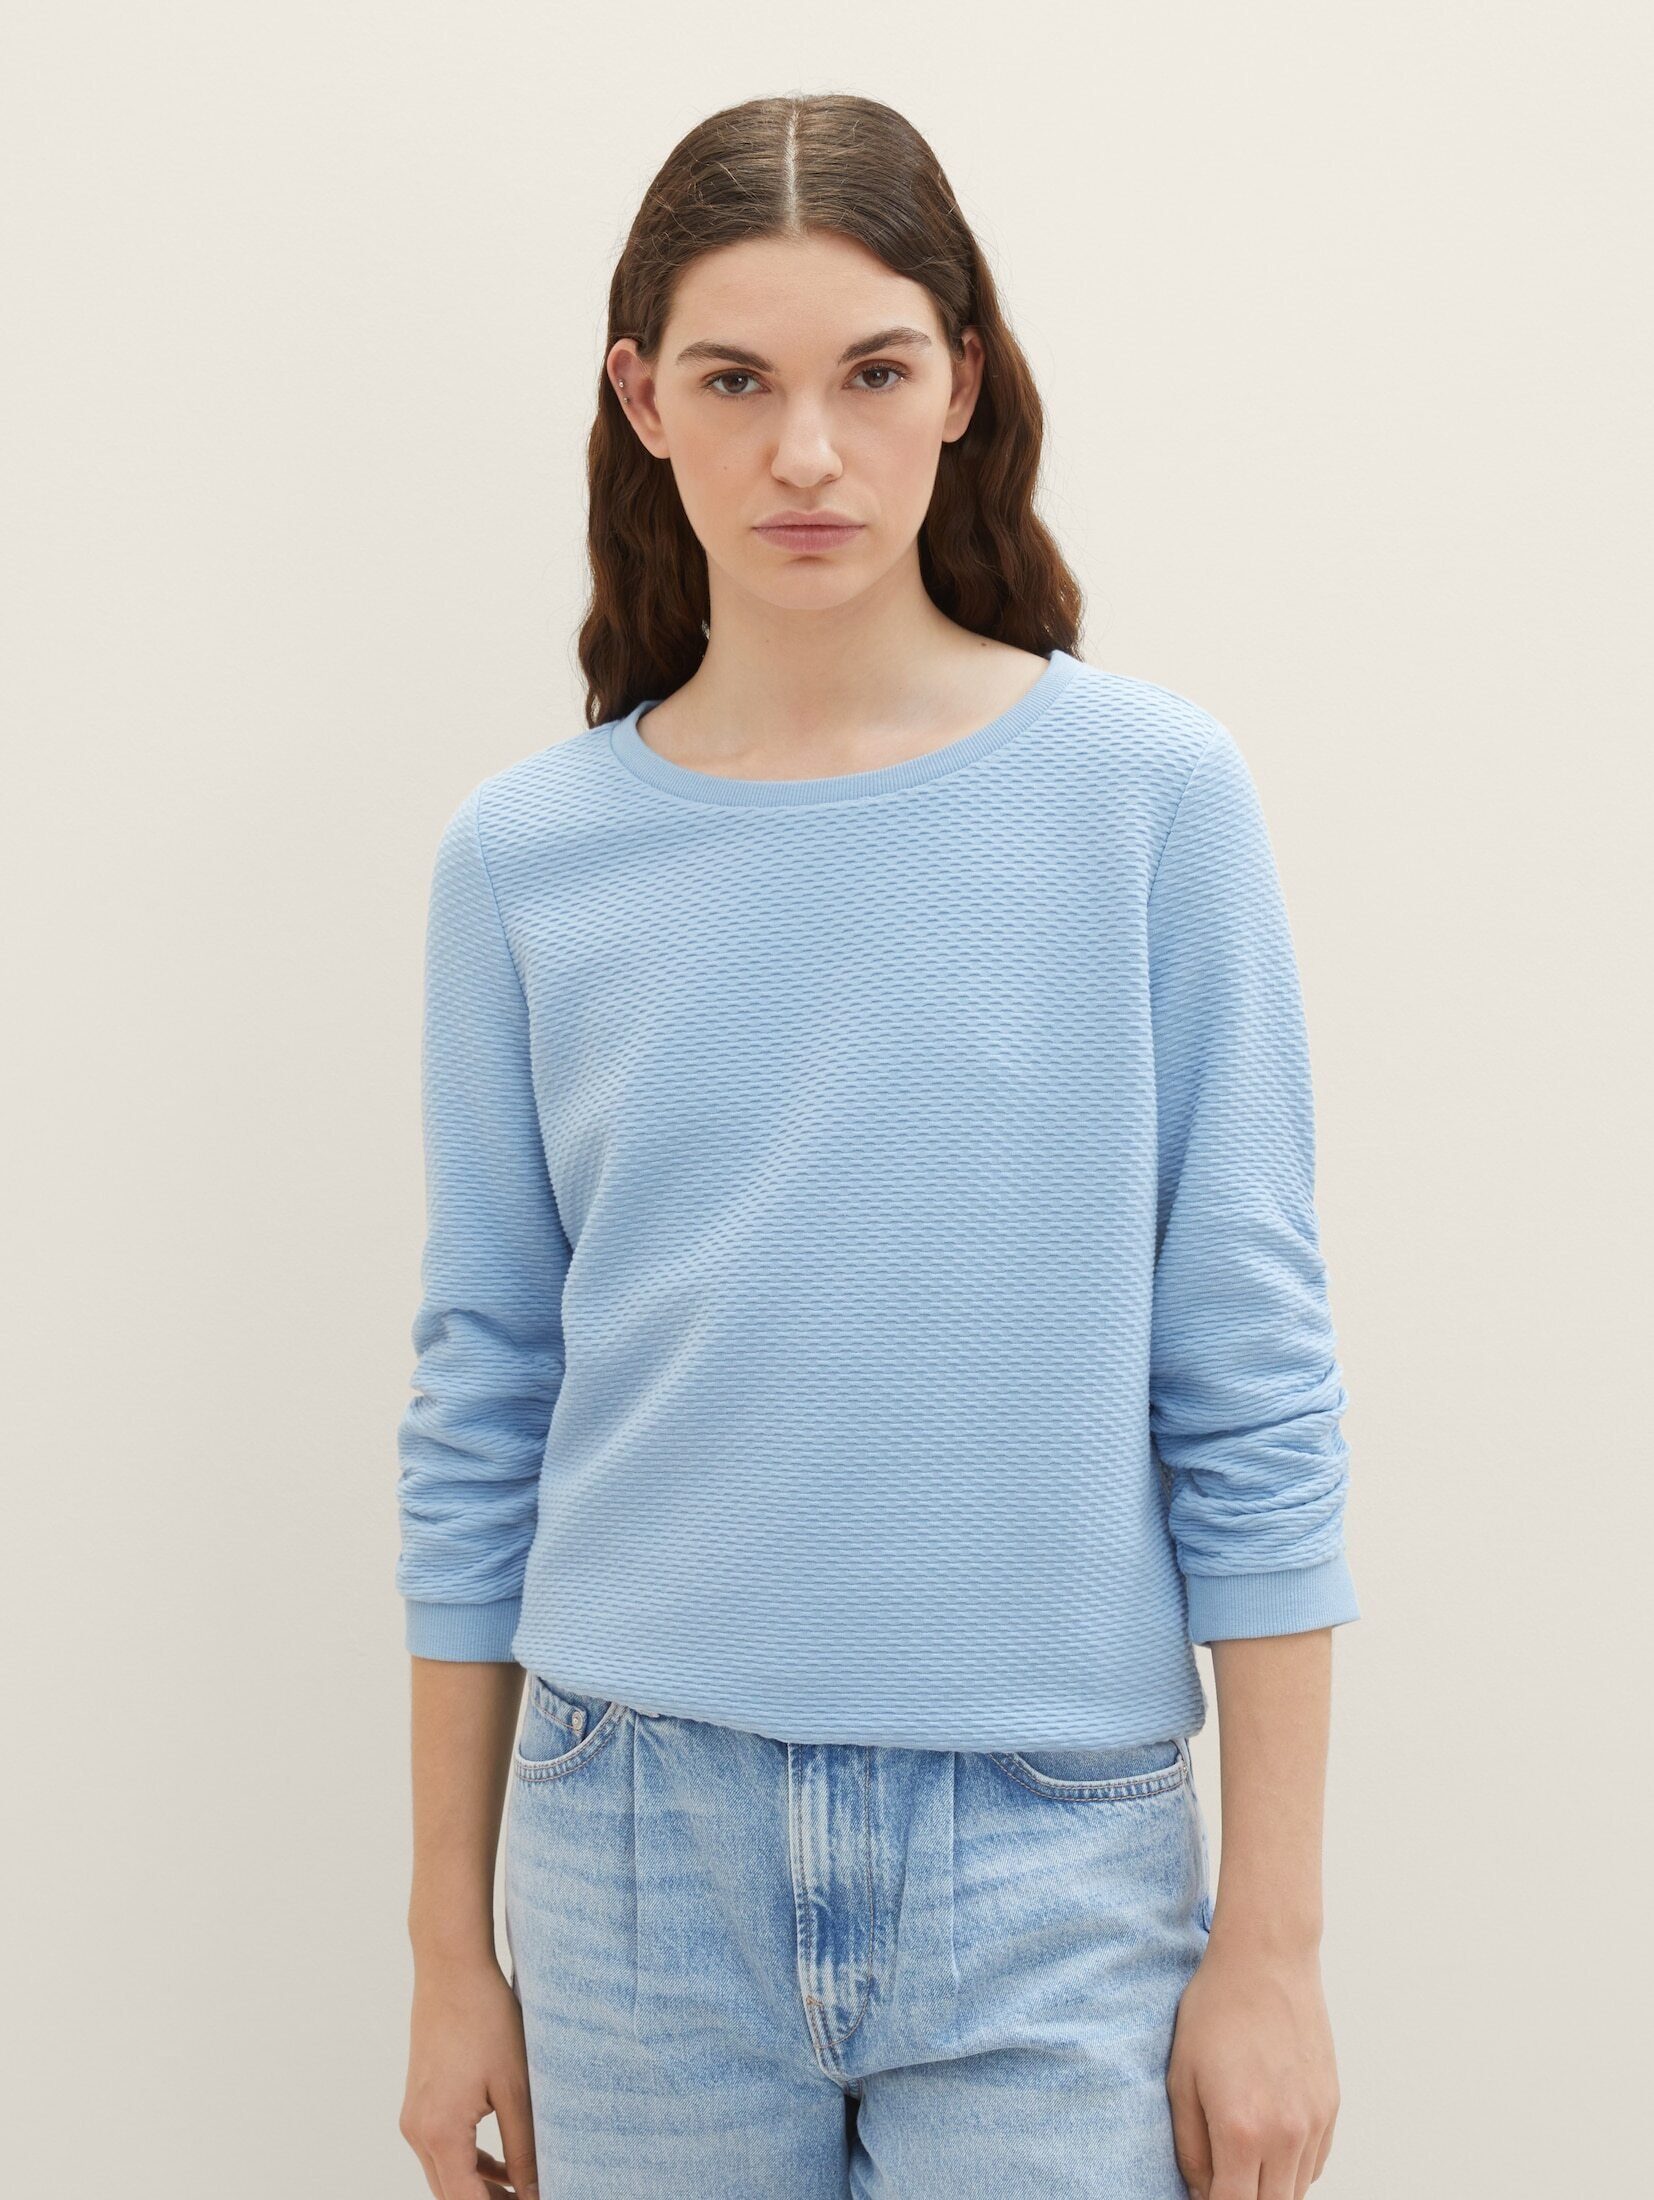 TOM Sweatshirt Denim Soft Sweatshirt Charming TAILOR Blue Strukturiertes